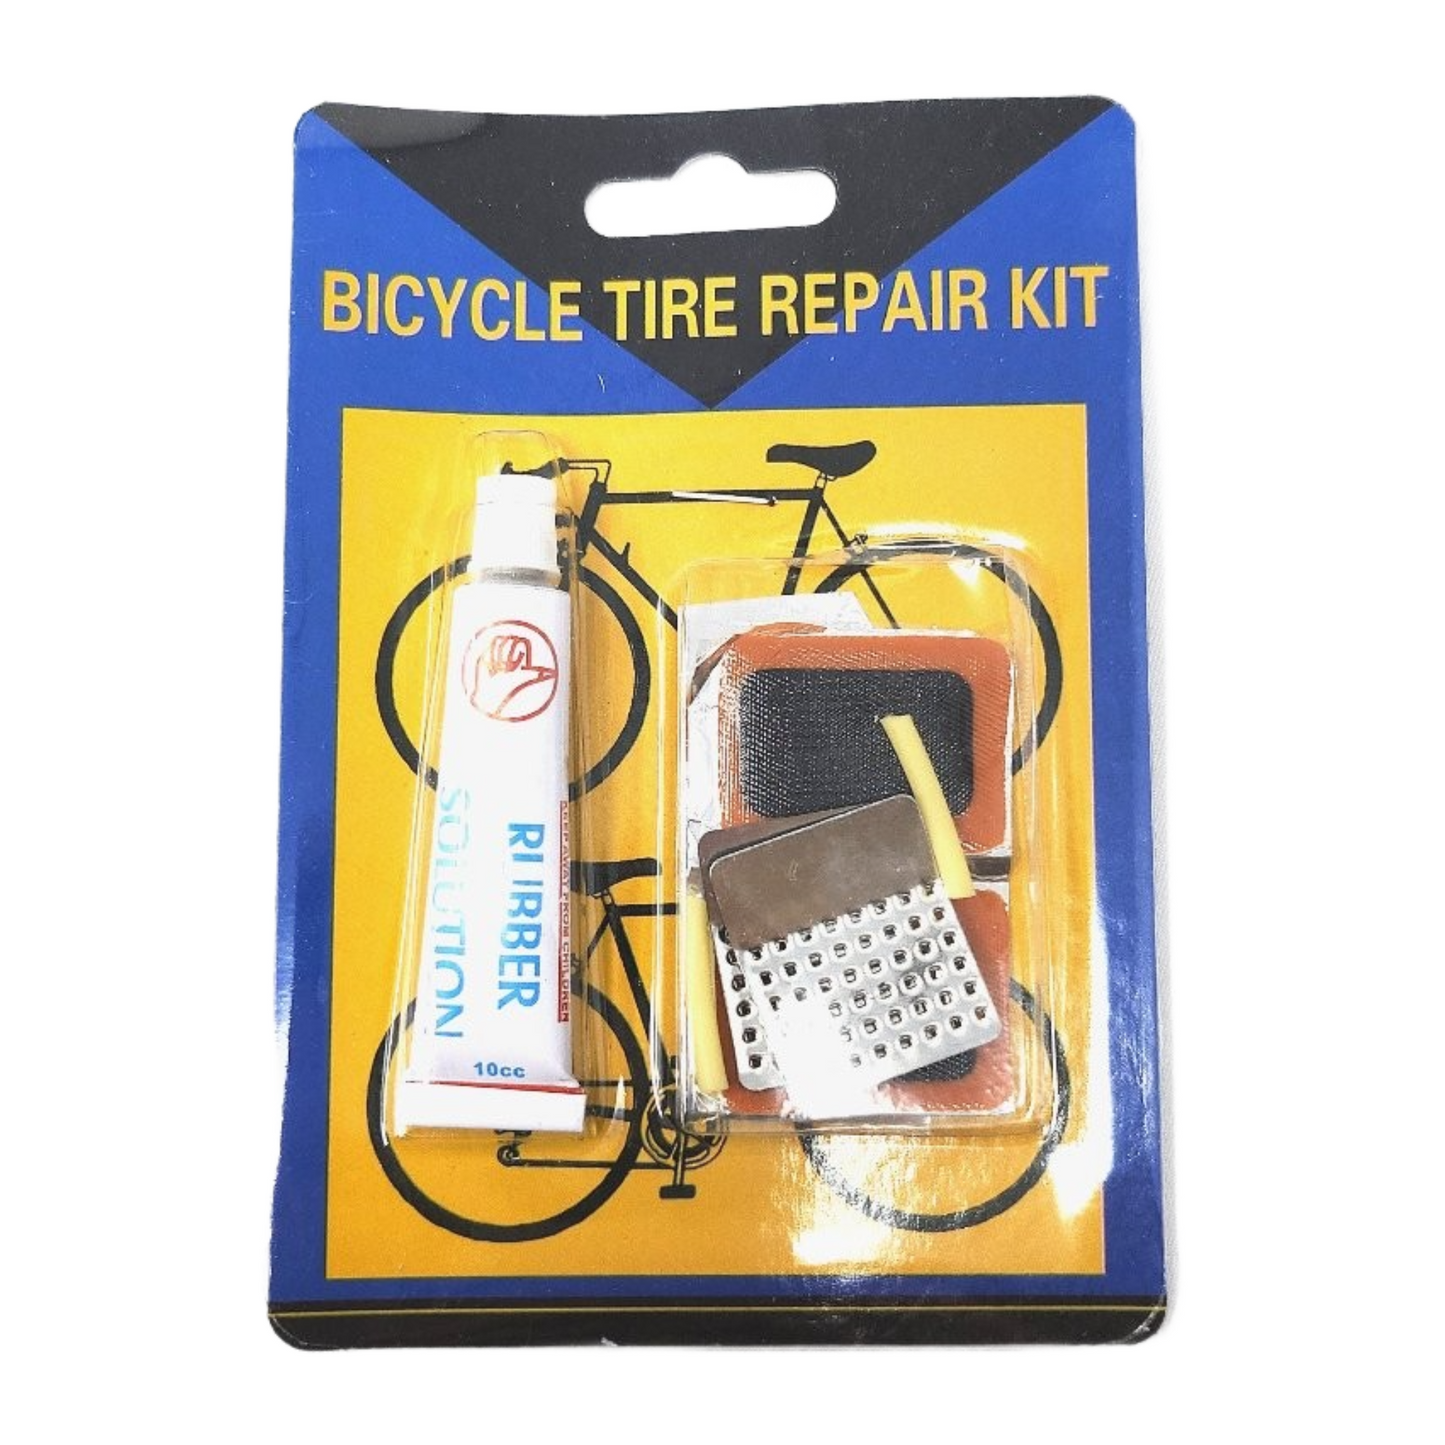 Tire Repair Kit, Bicycle